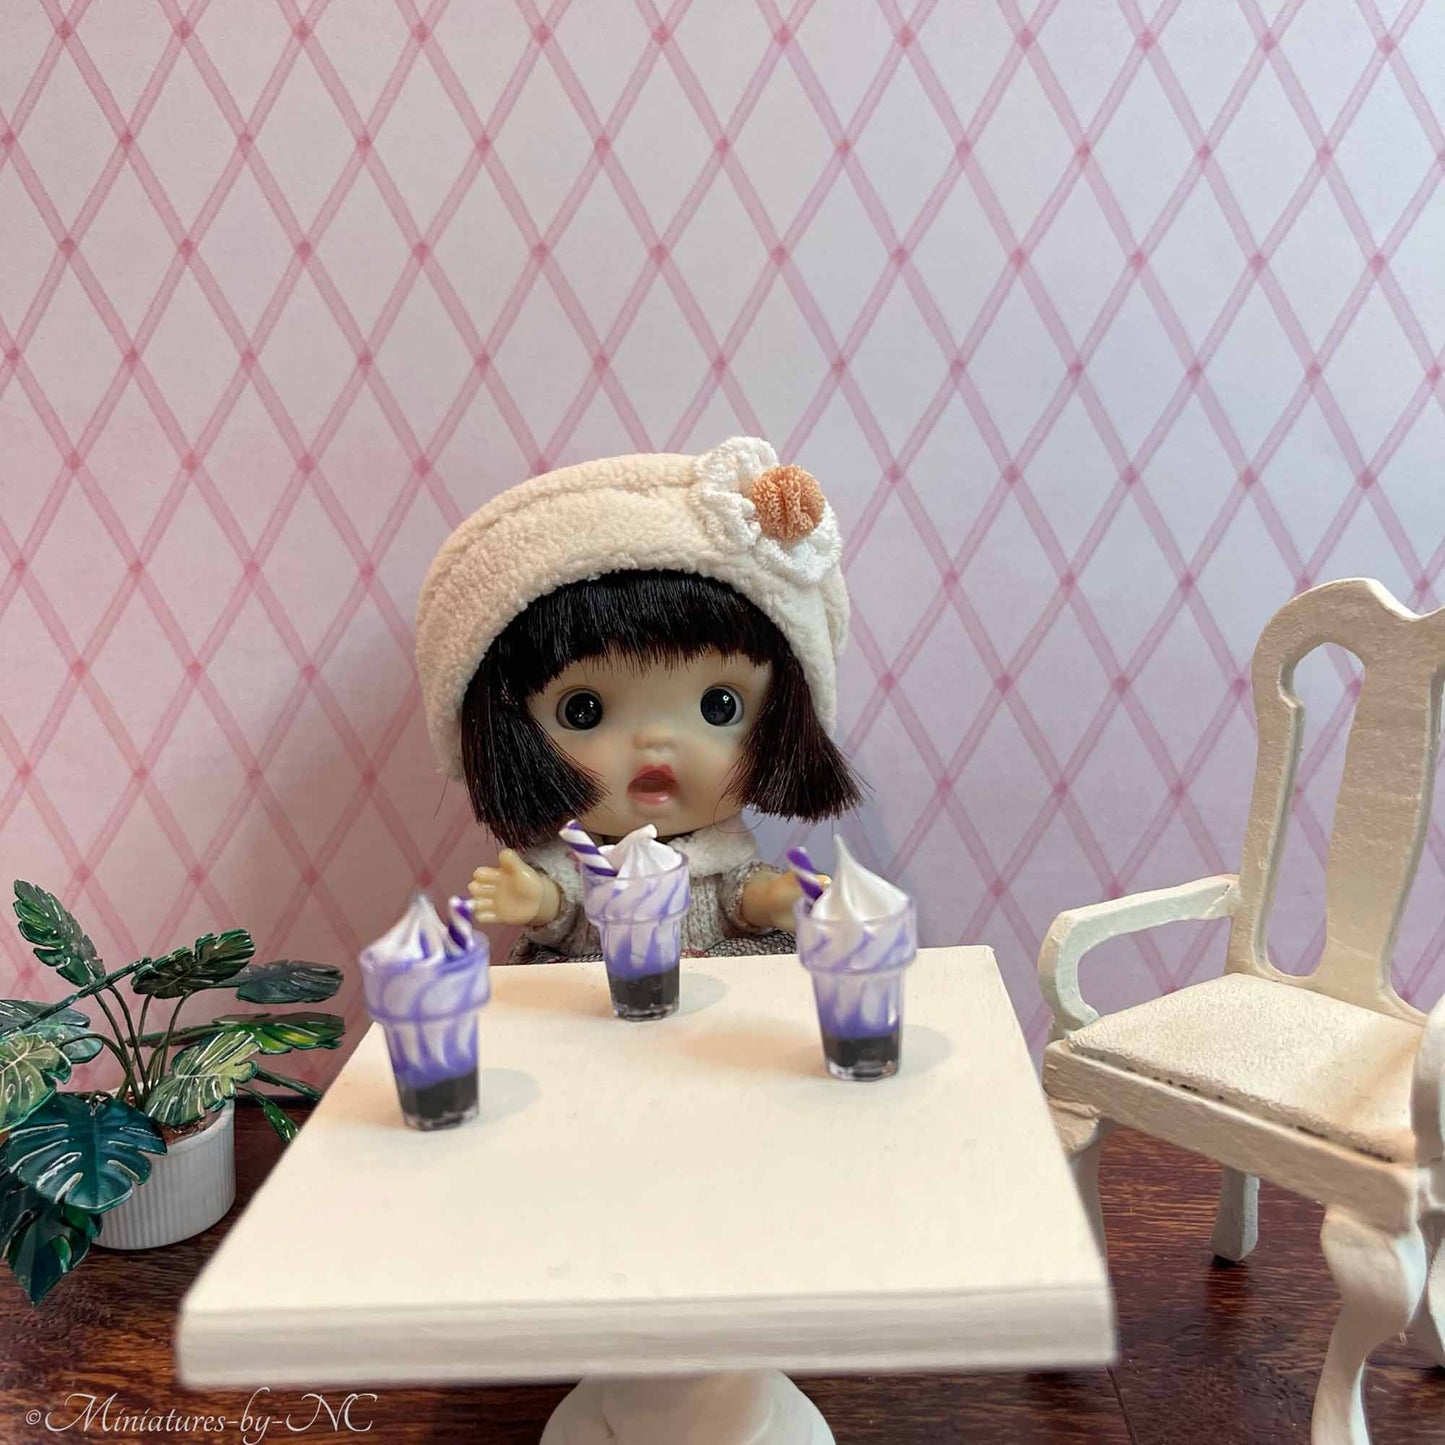 Miniature Sundae / Ice Cream Parfait 1 Accessoire de maison de poupée à l'échelle 12